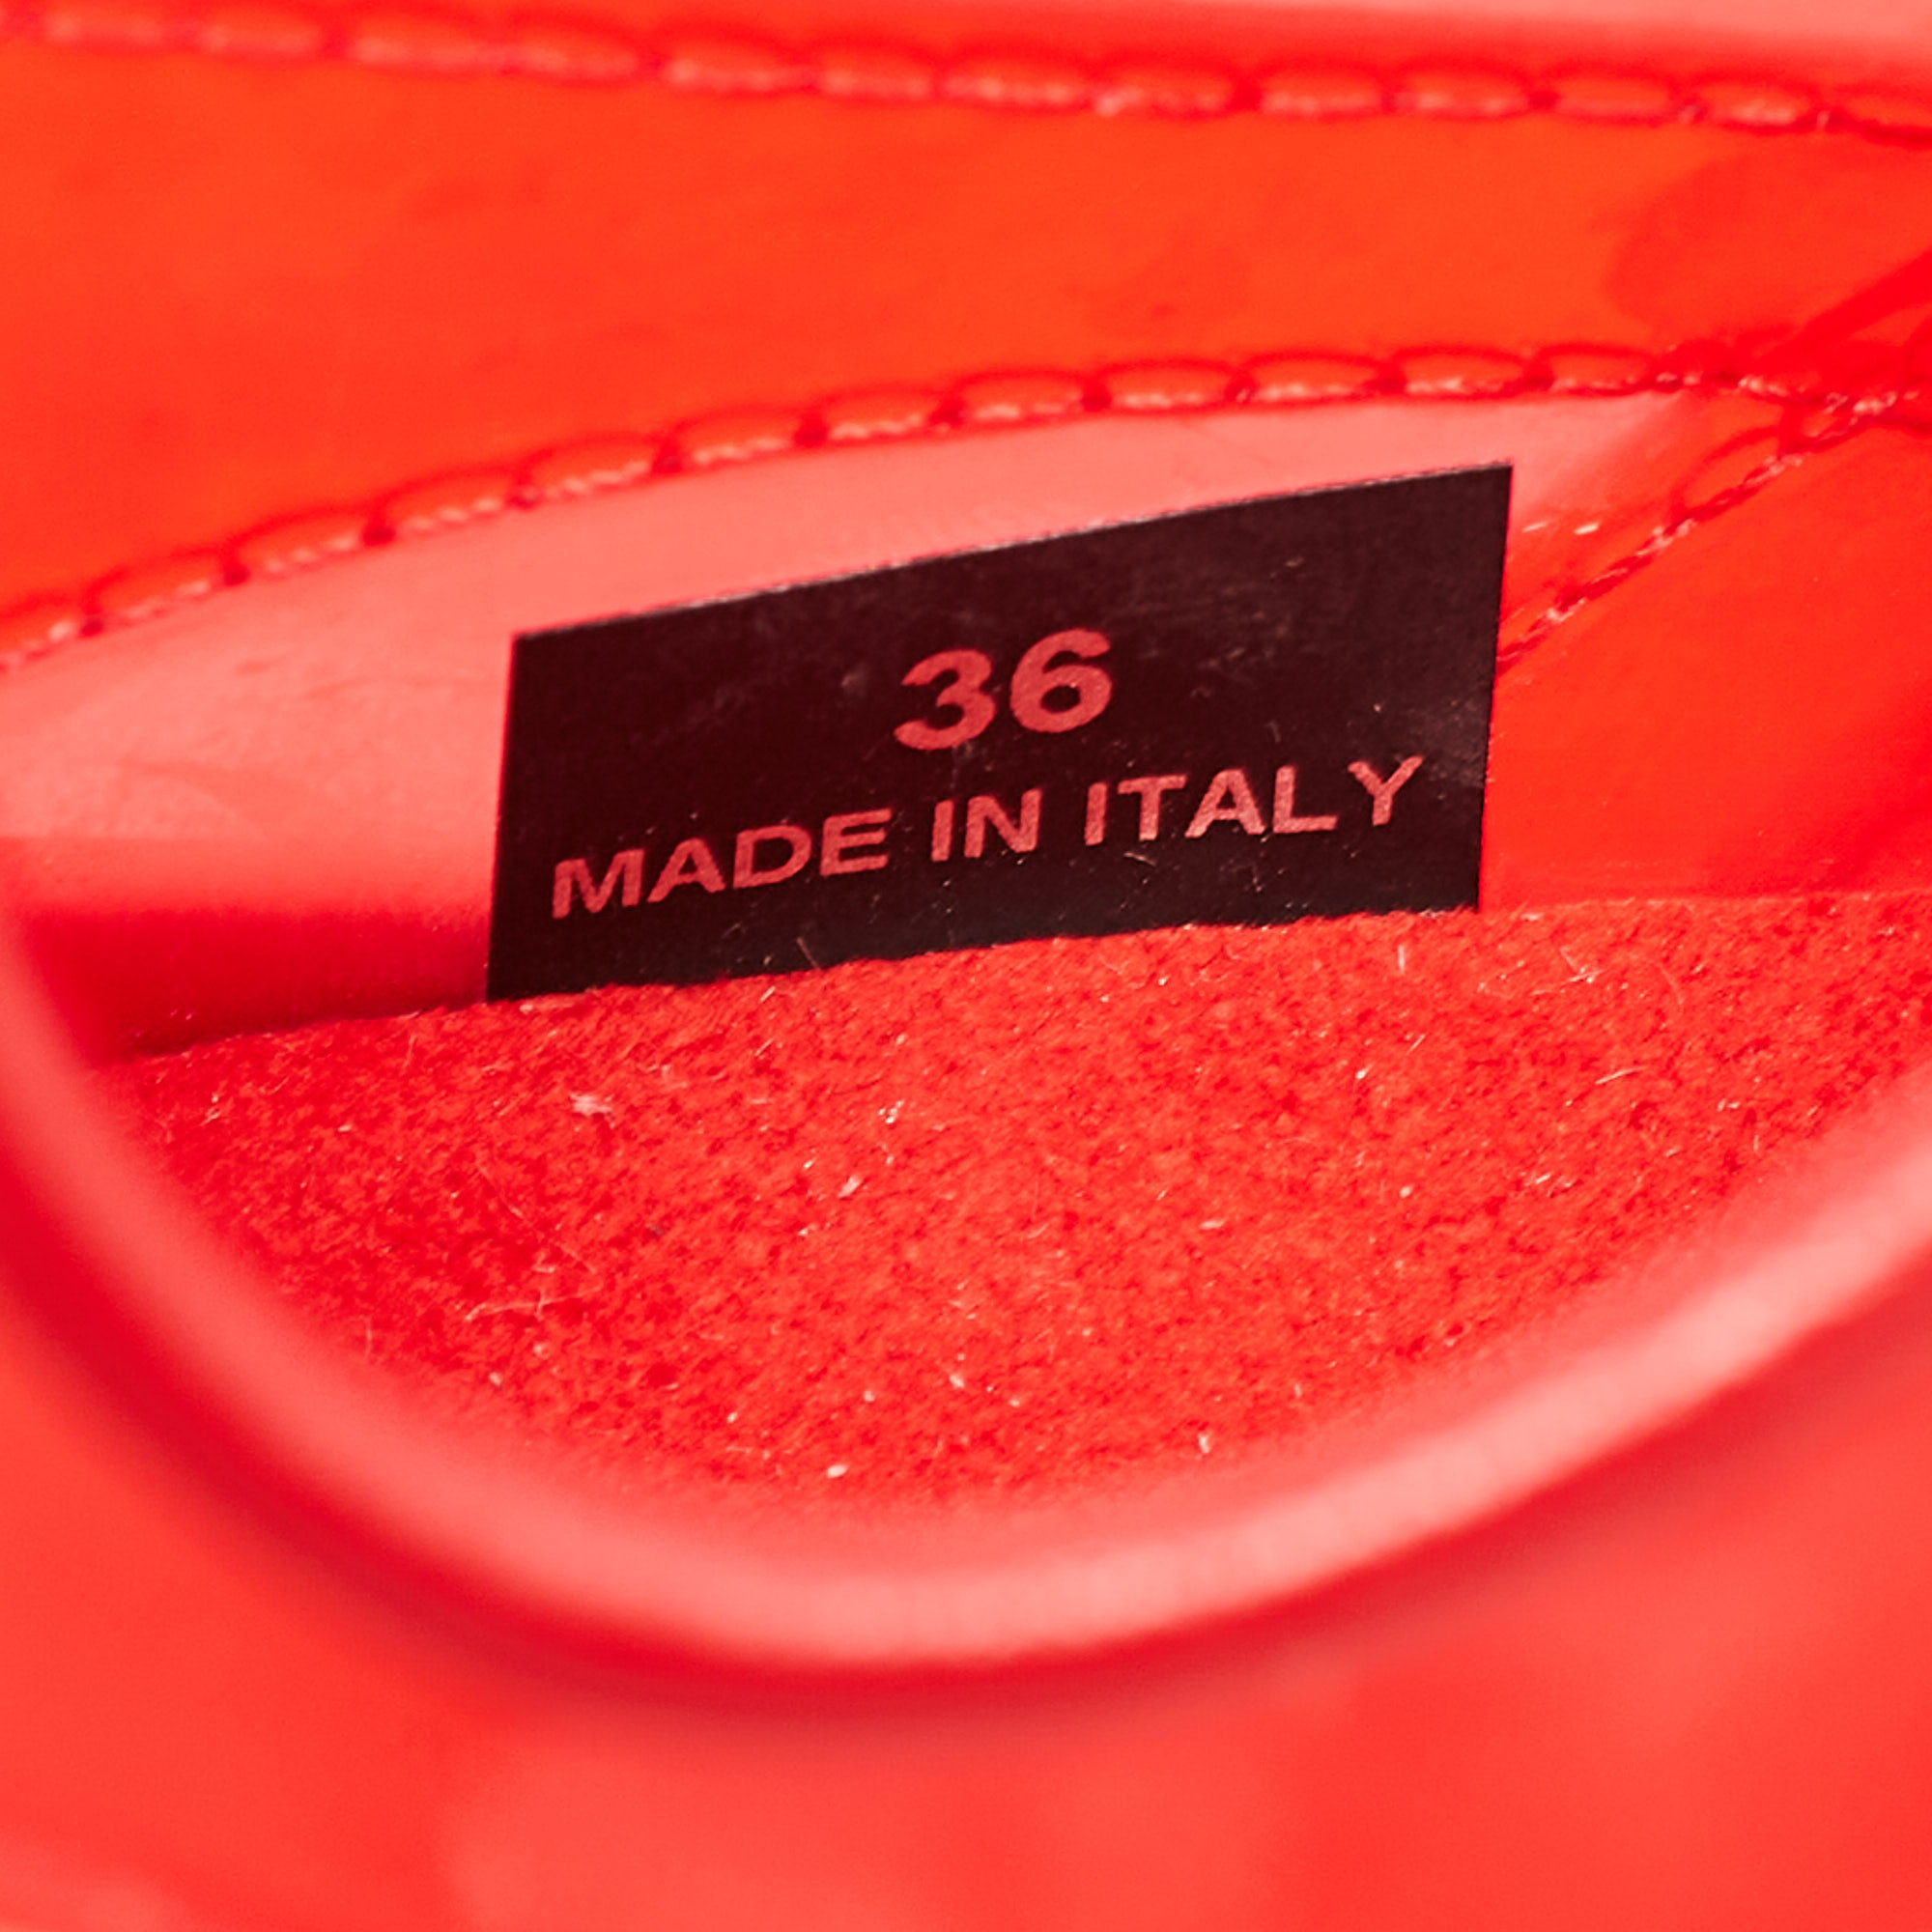 Stella McCartney Red PVC  Eclypse Low Top Sneakers Size 36